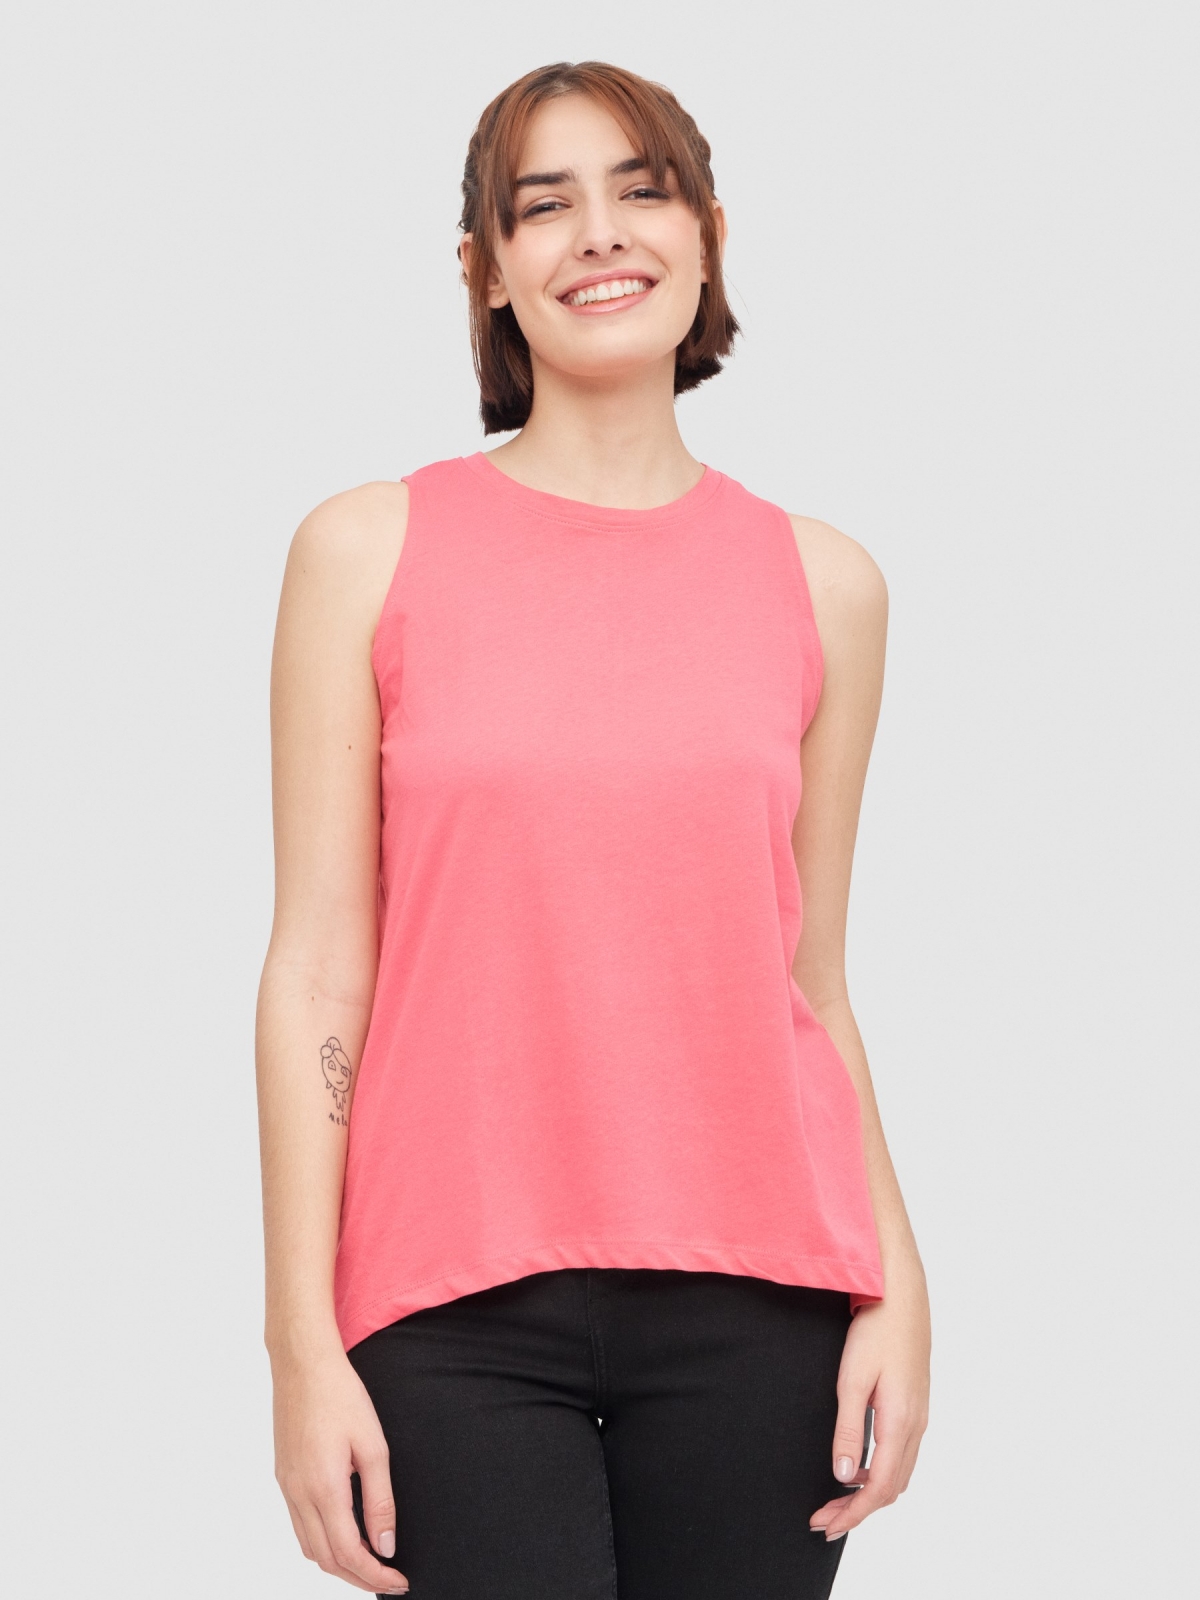 Camiseta abertura nas costas rosa vista meia frontal